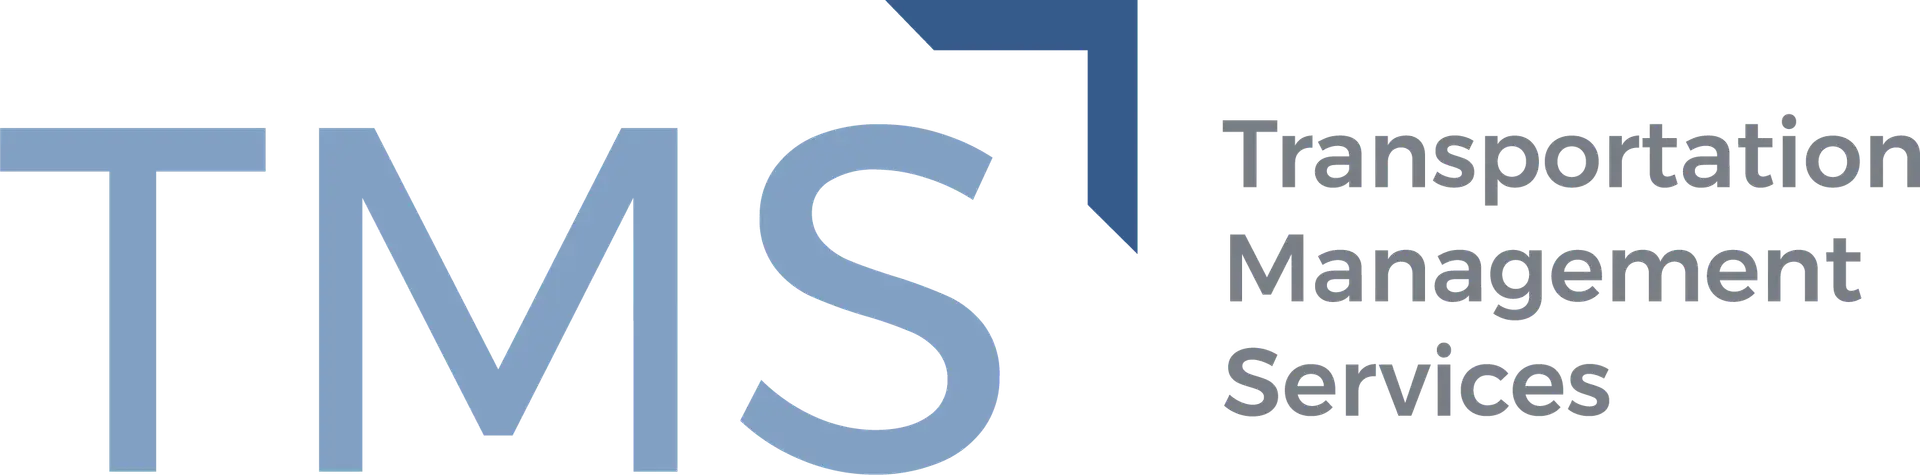 Logotipo de servicios de gestión de transporte